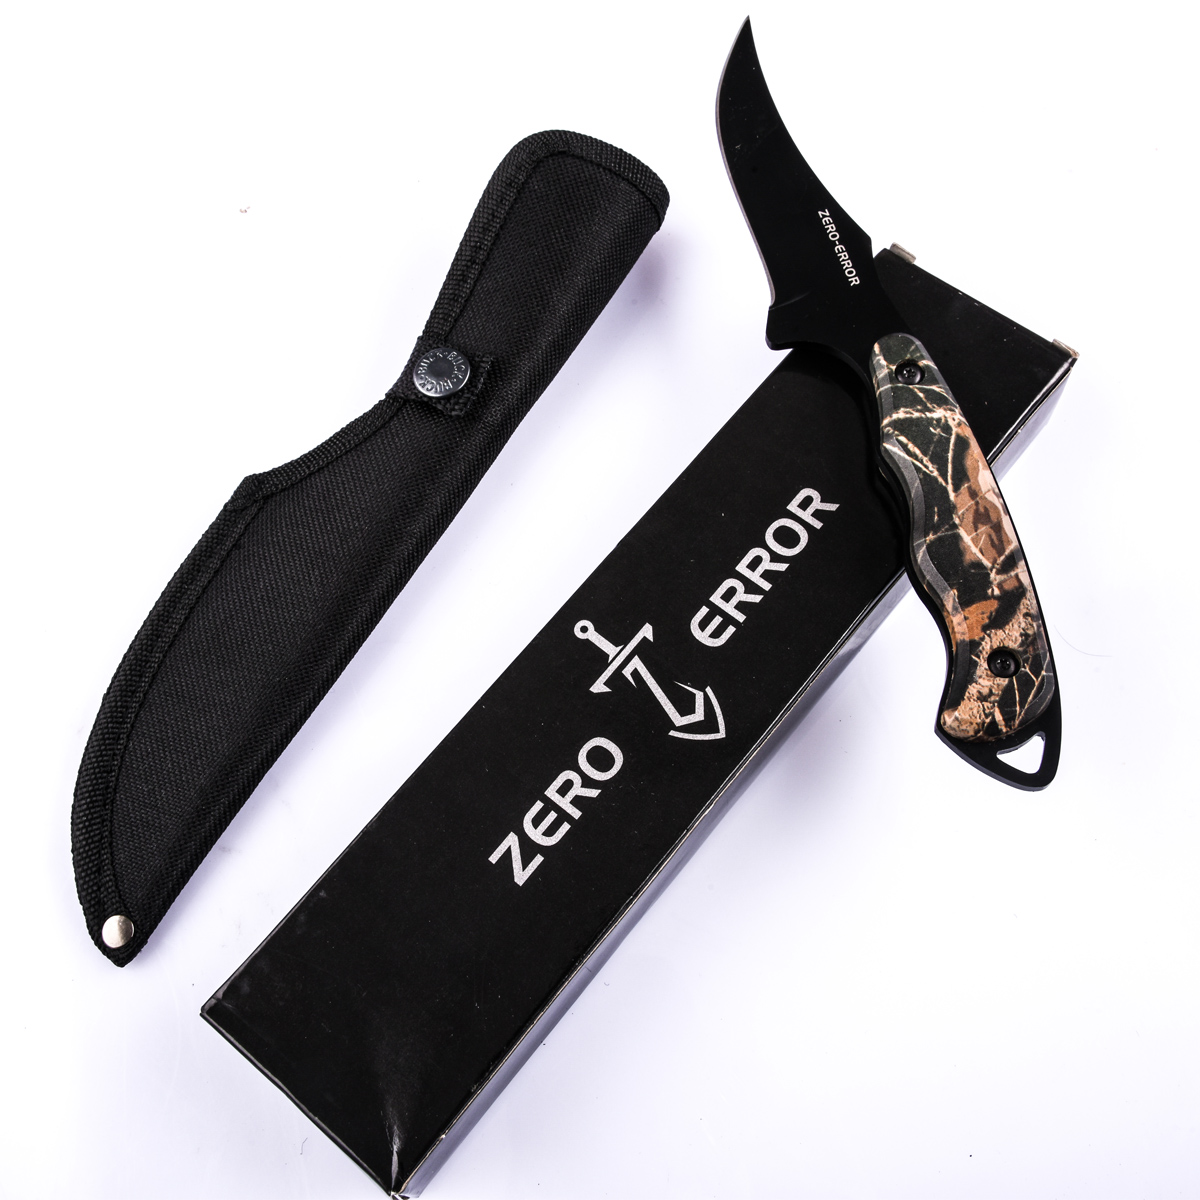 Купить нож ZERO-ERROR в качестве подарка охотнику 